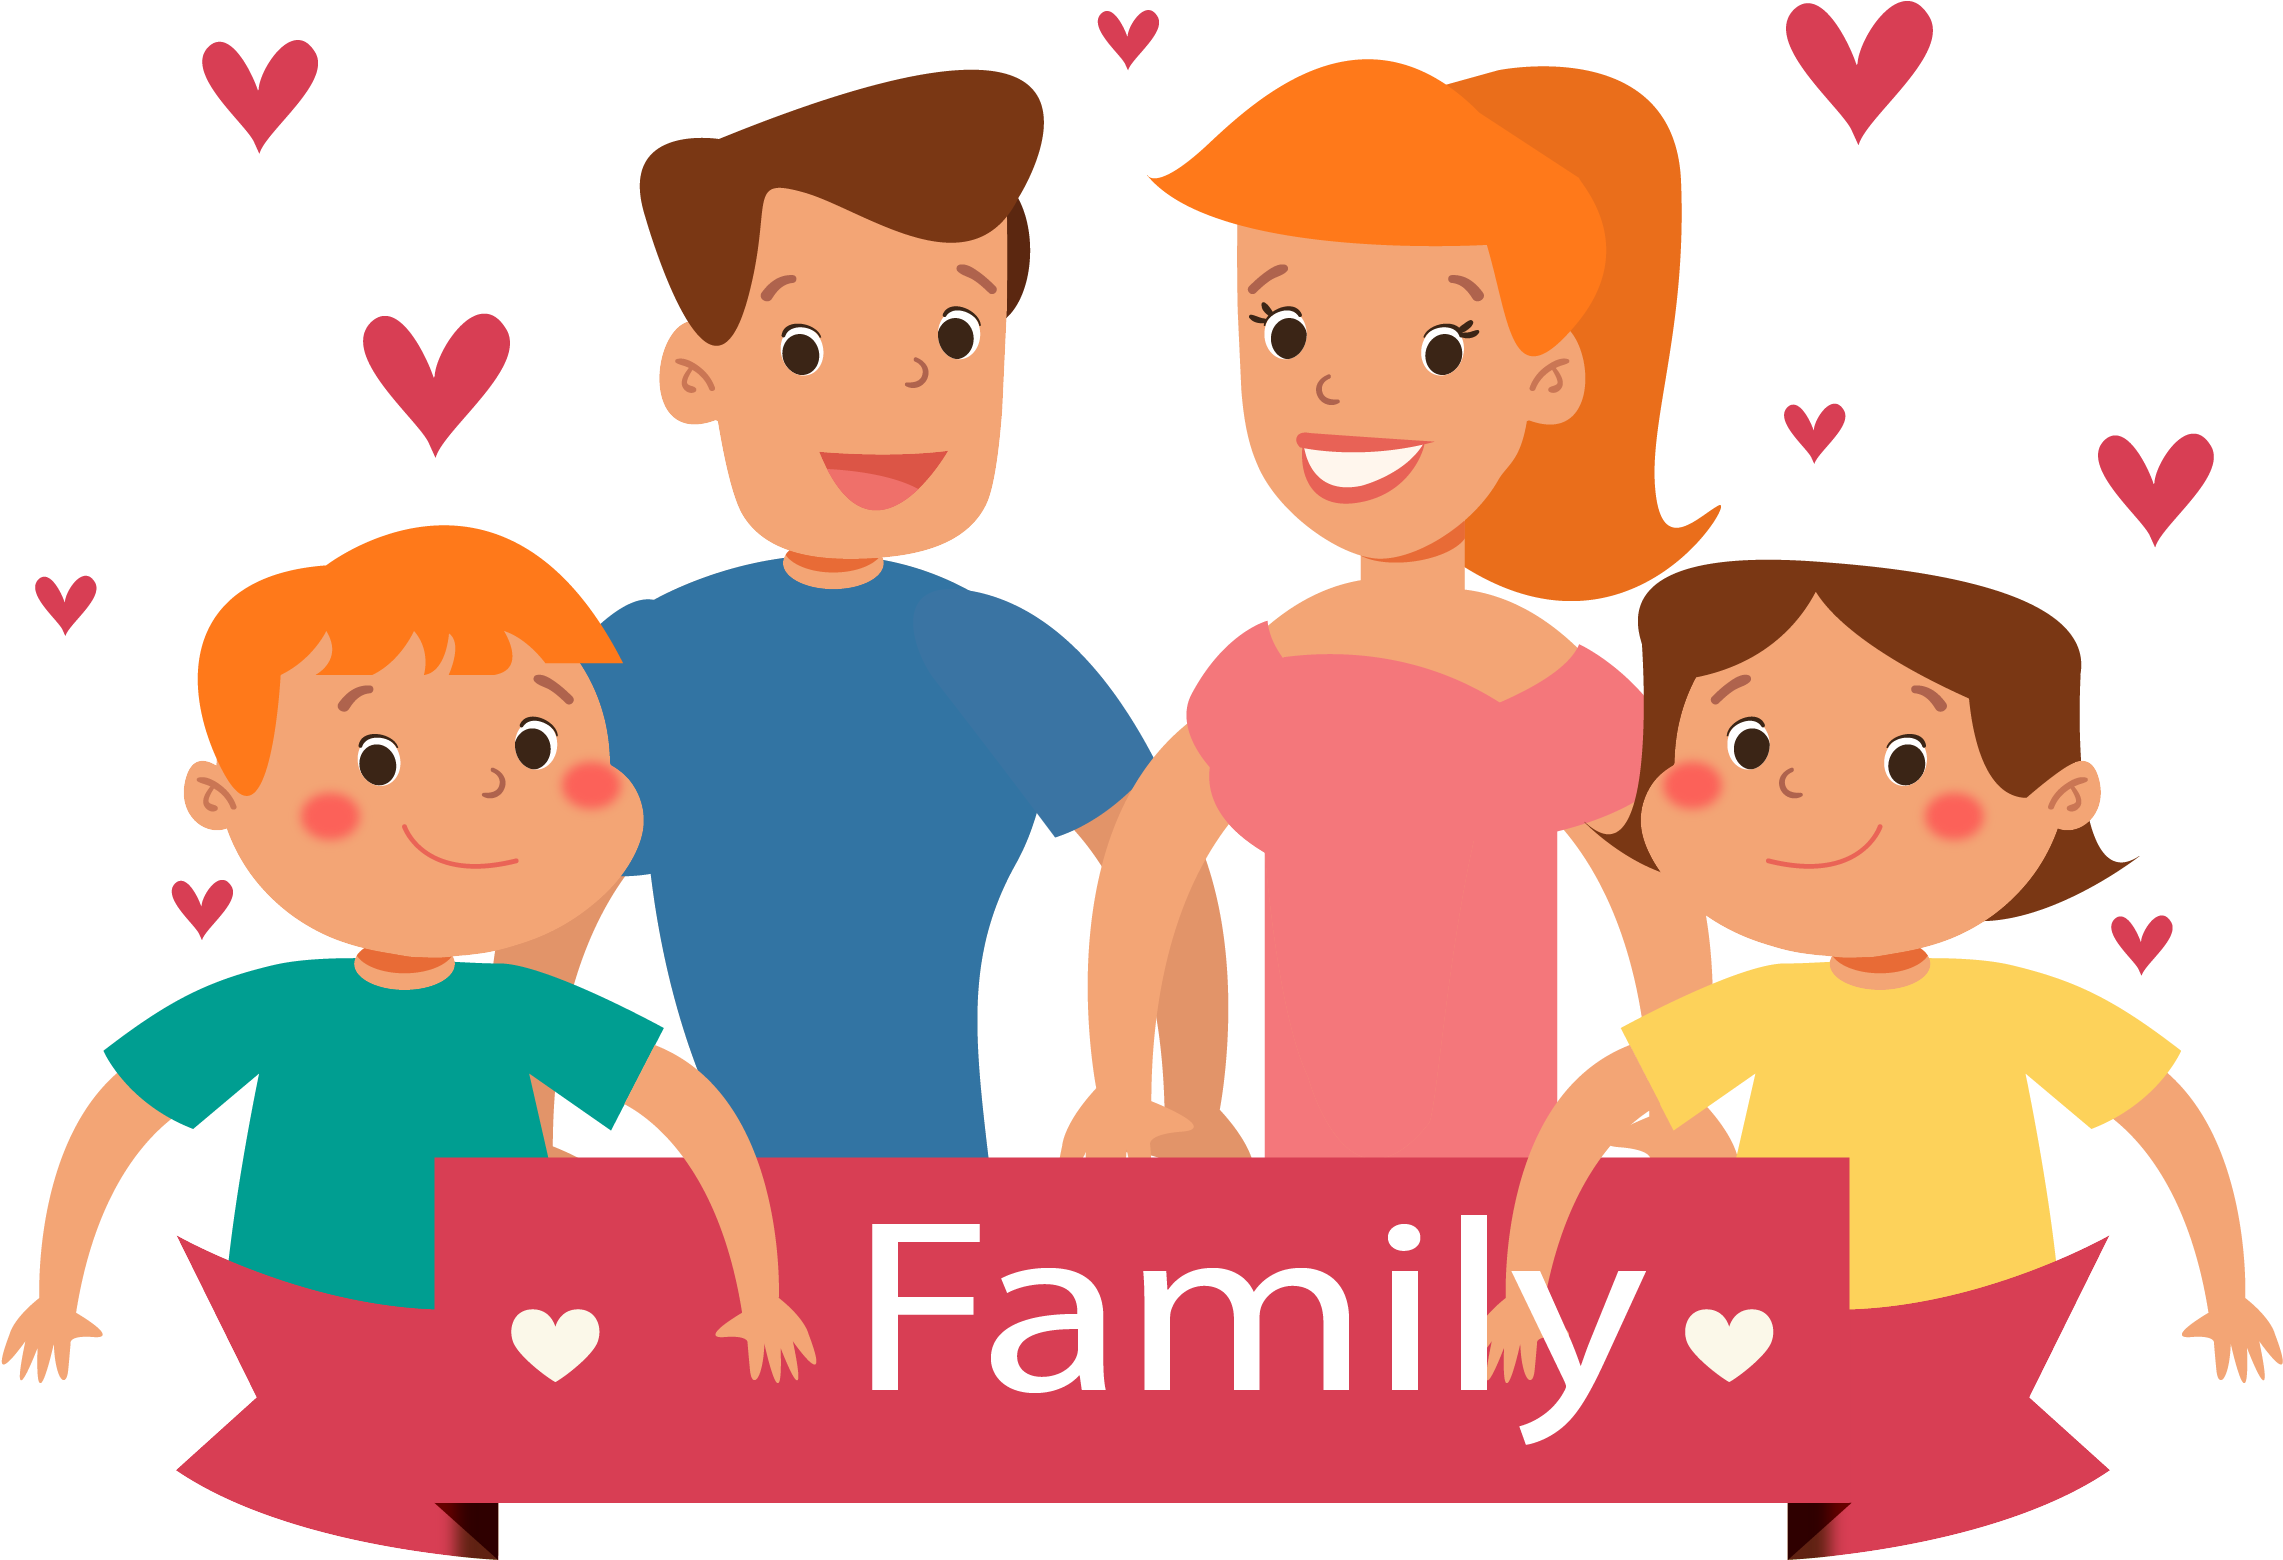 Go love family. Стикеры семья. Картинки с изображением семьи. Семья Стикеры для презентации. Стикеры моя семья.